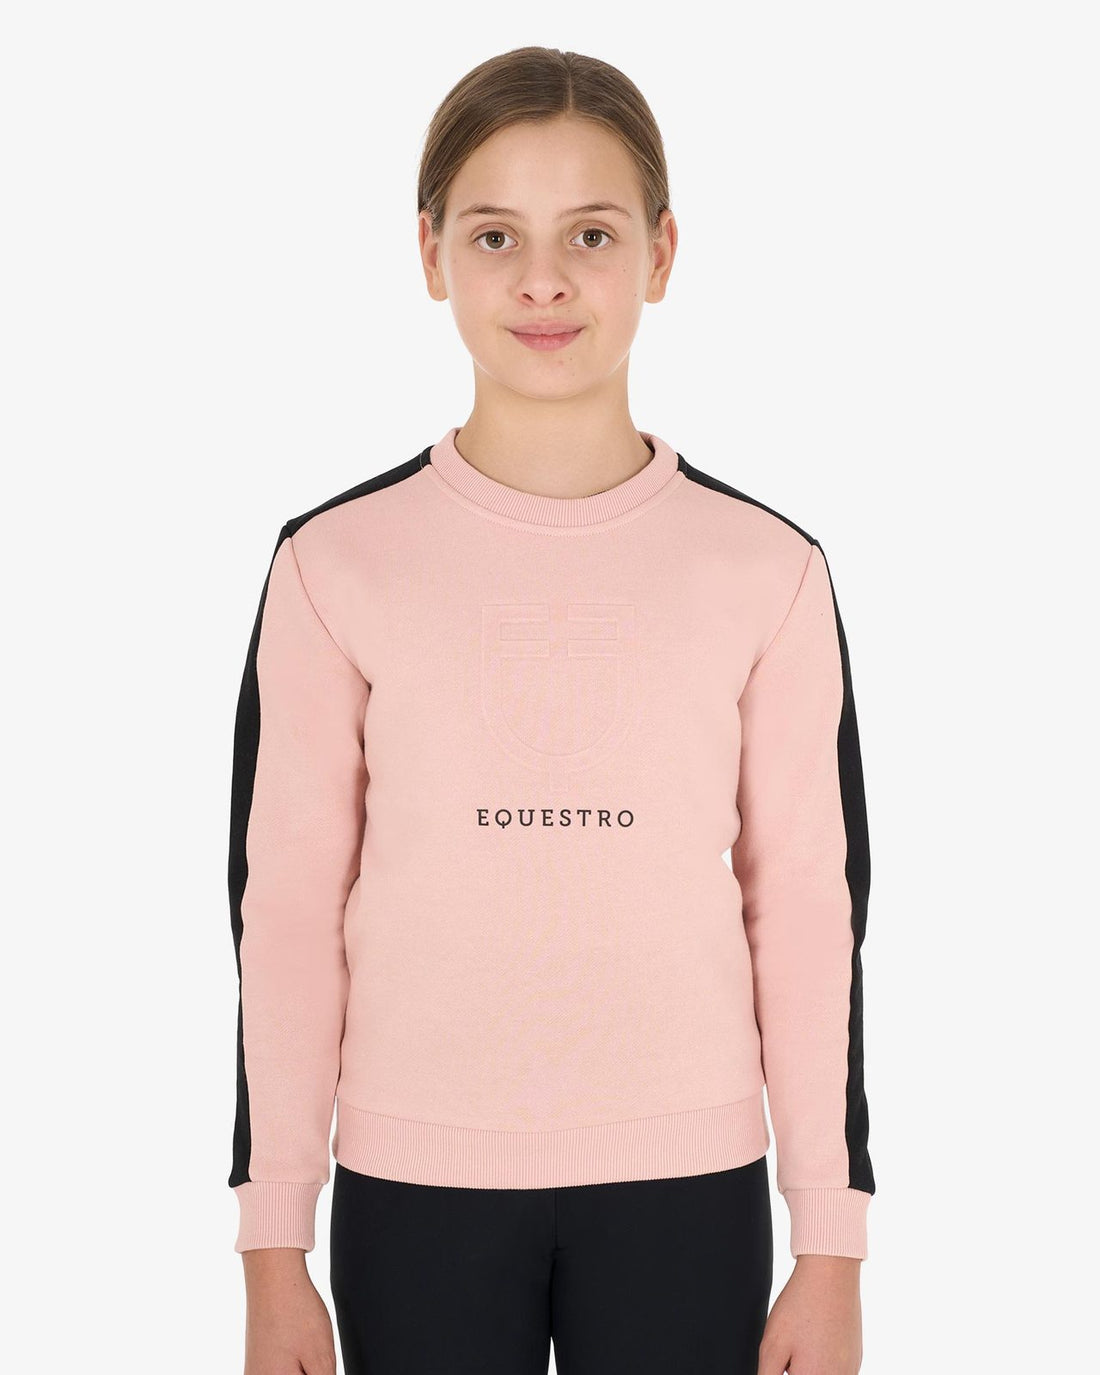 Equestro - Junior sweatshirt